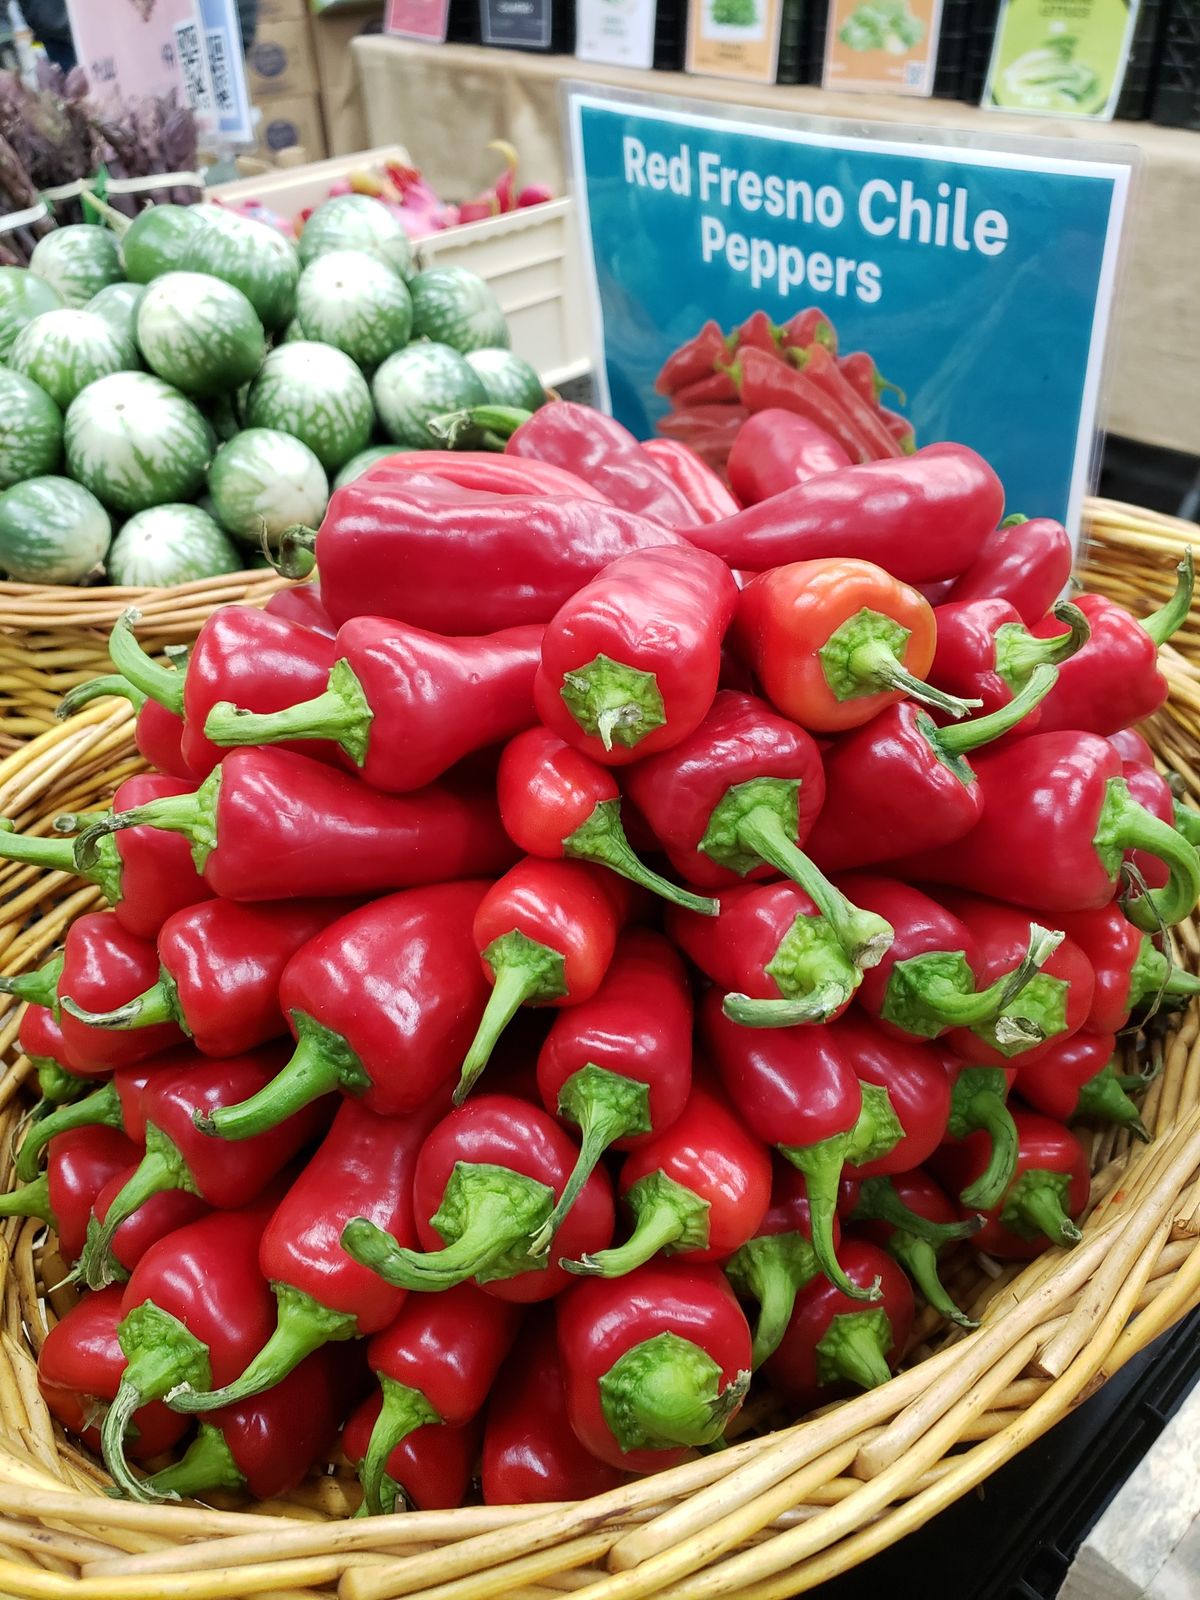 Červené fresno chilské papriky